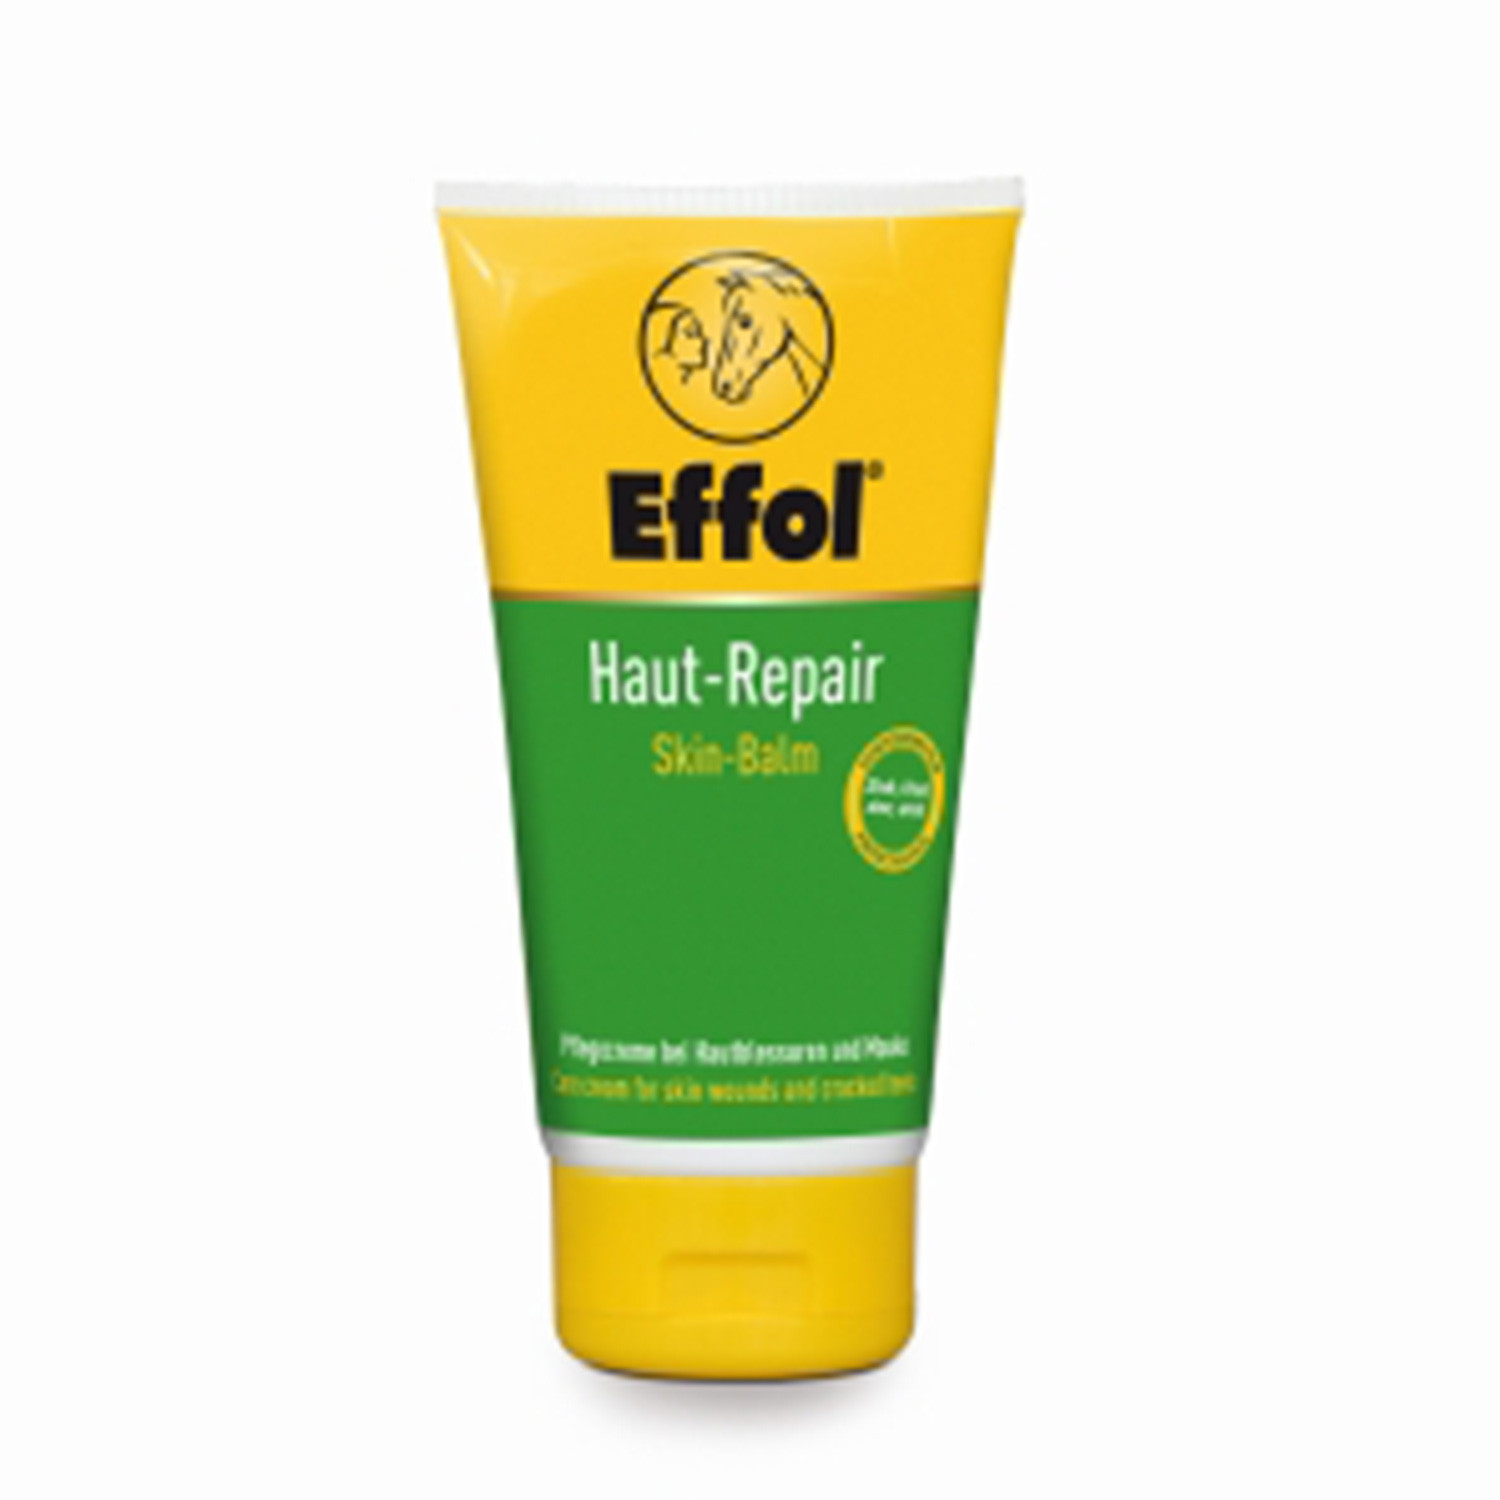 Skin-repair effol